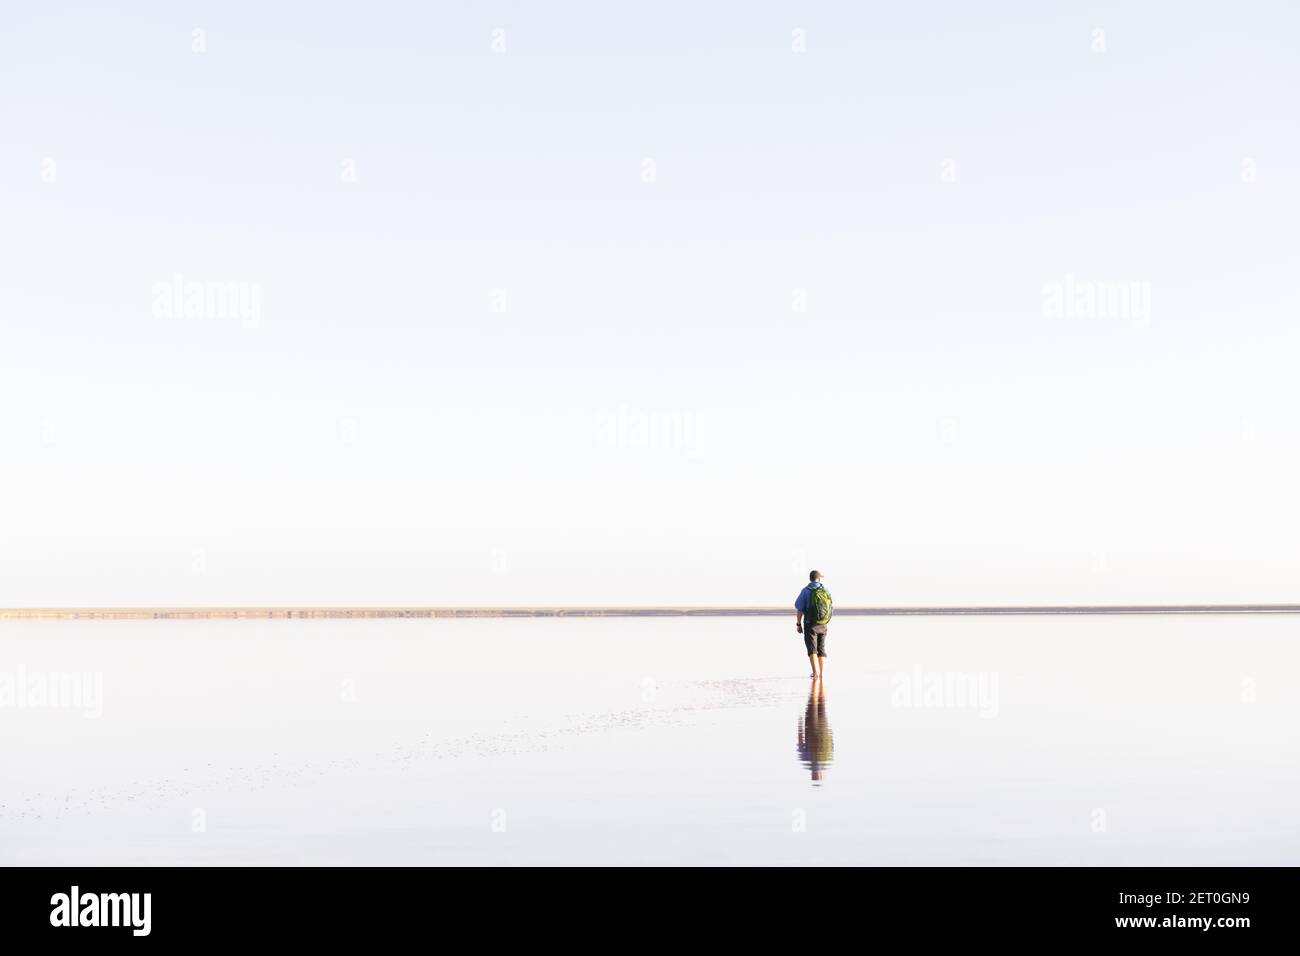 Paysage minimaliste tranquille avec homme solitaire en bleu jacré avec eau calme avec horizon avec ciel clair. Photographie de paysage minimale Banque D'Images